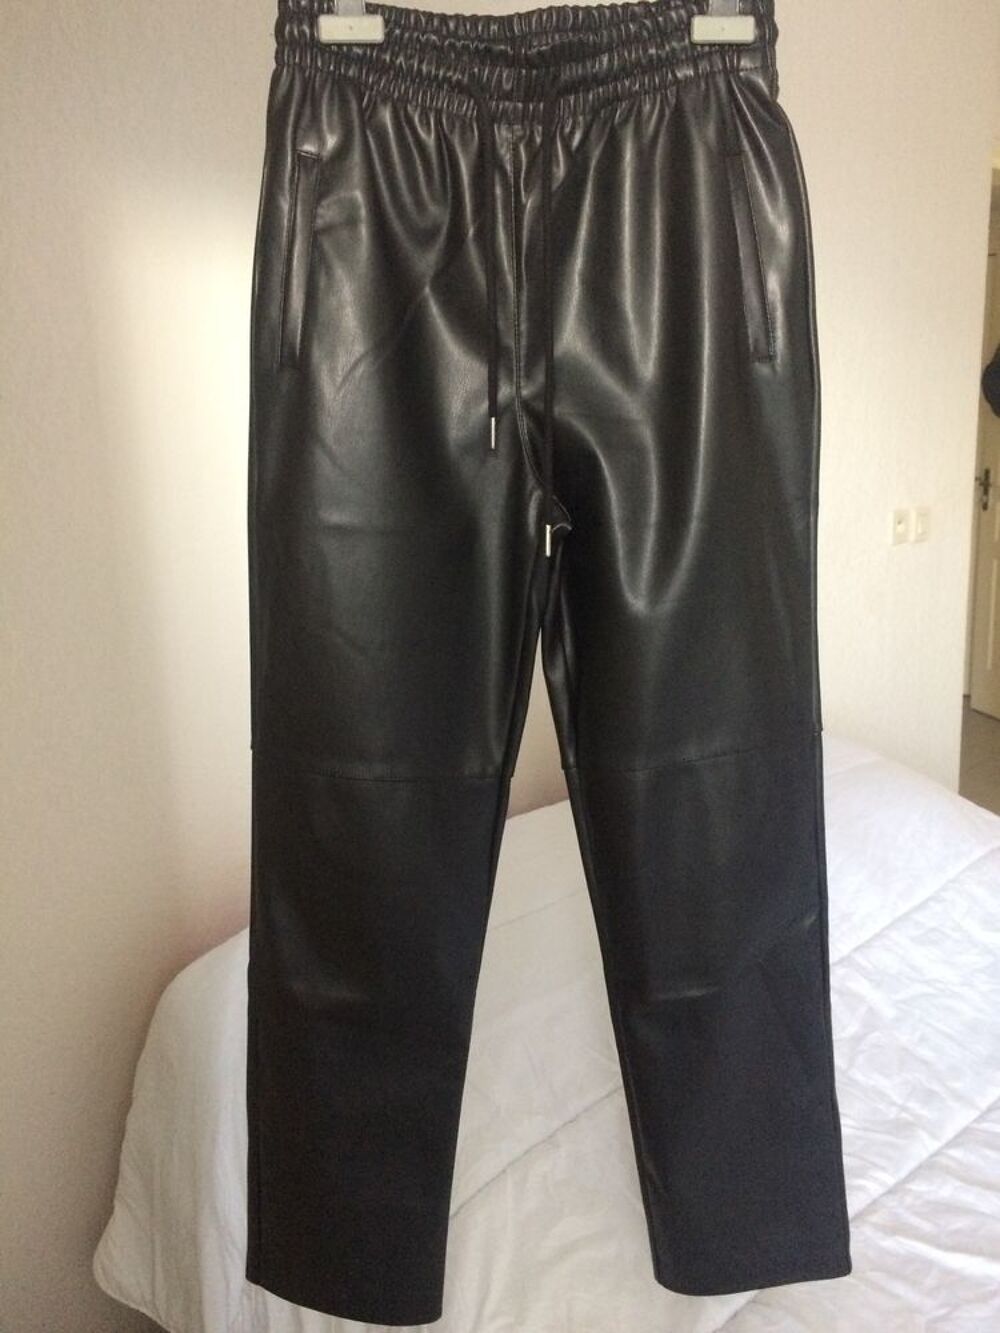 Pantalon simili cuir noir taille 36 coupe carotte
Vtements